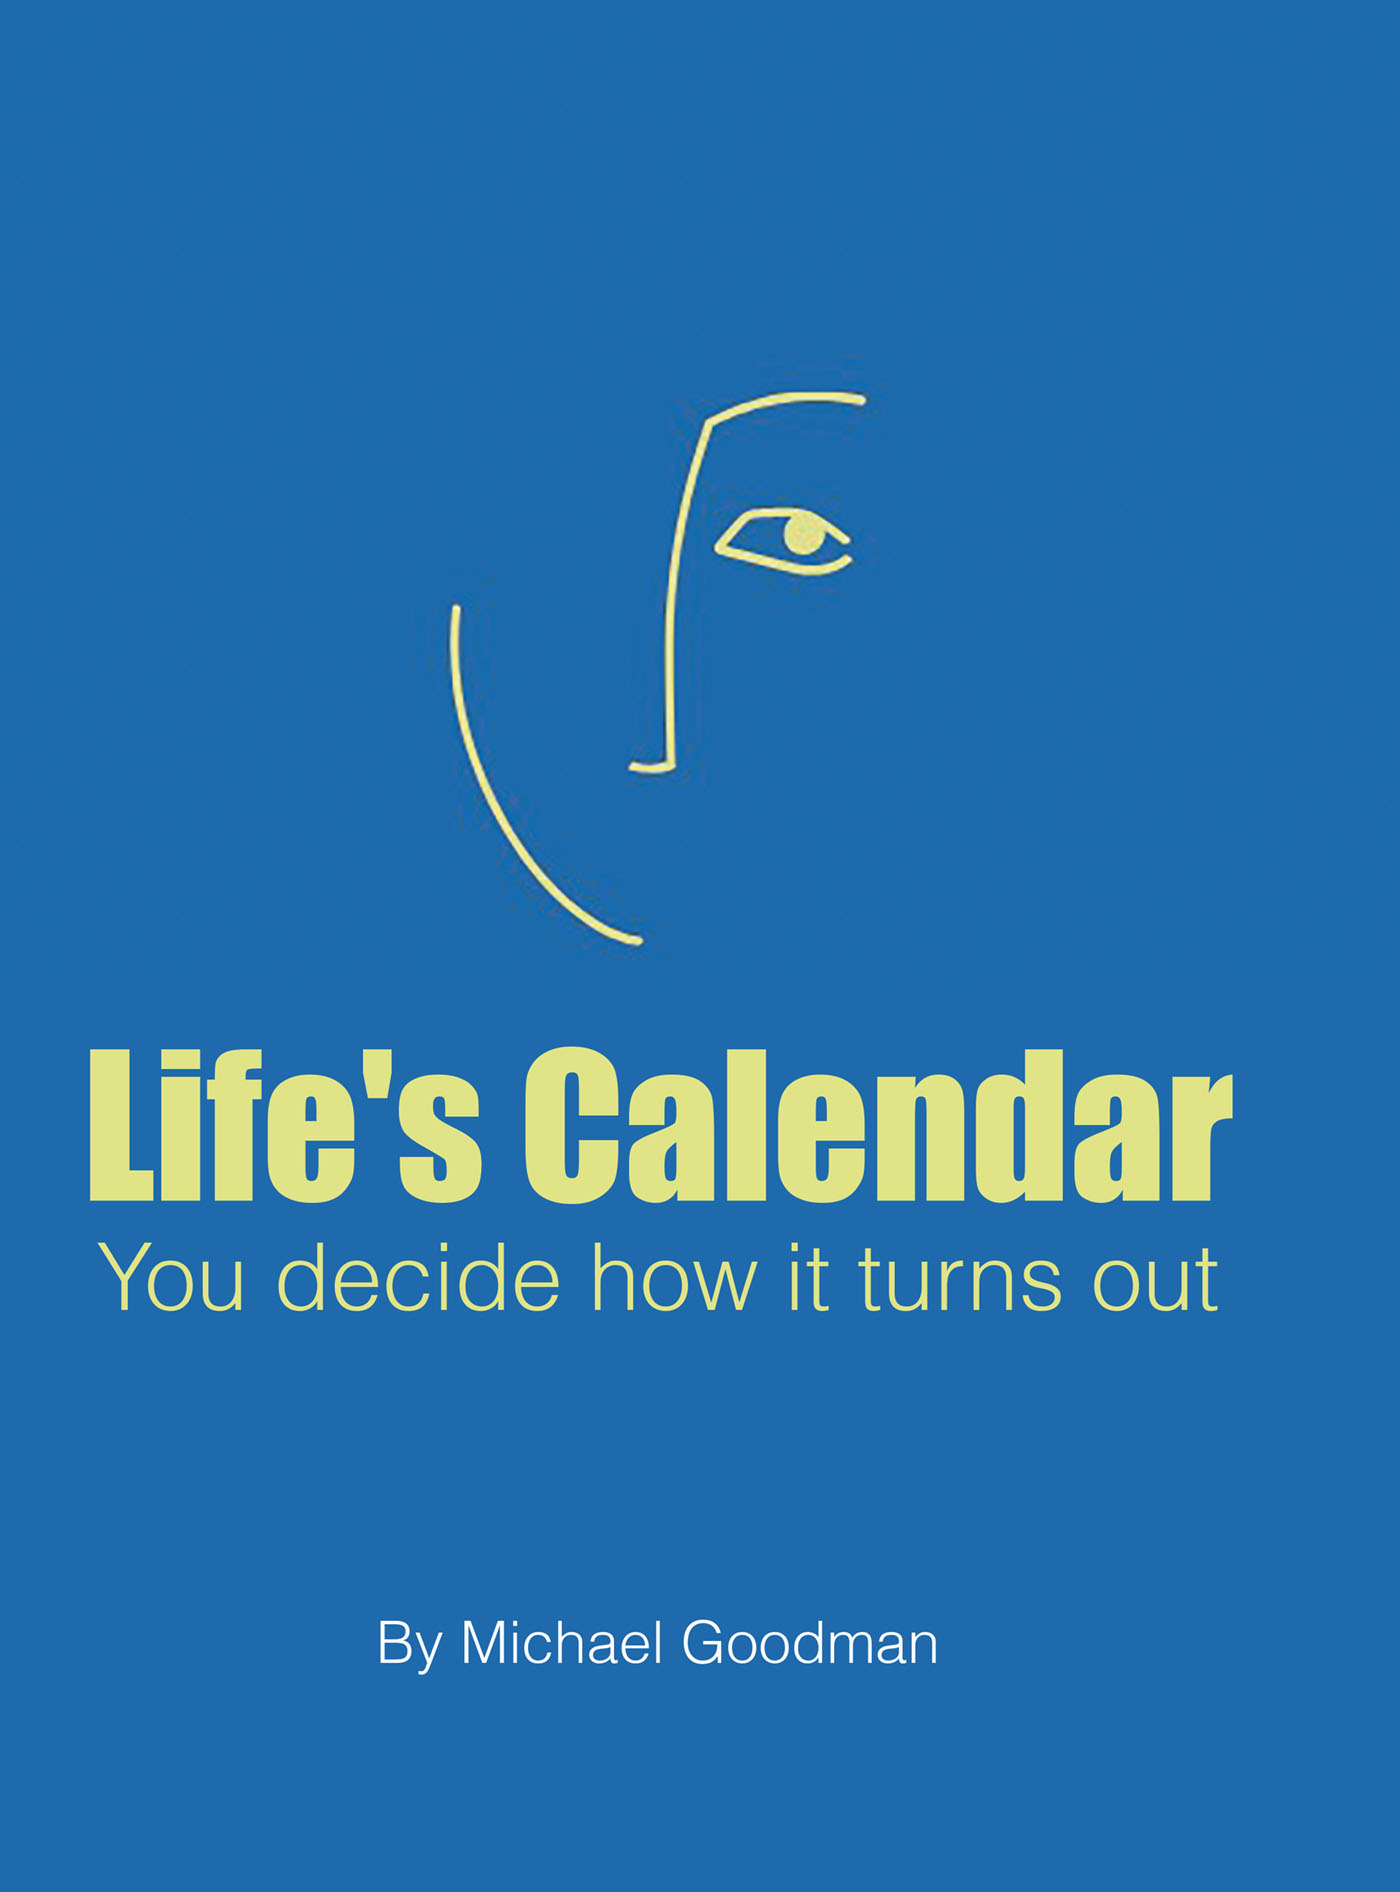 Life's Calendar Cover Image